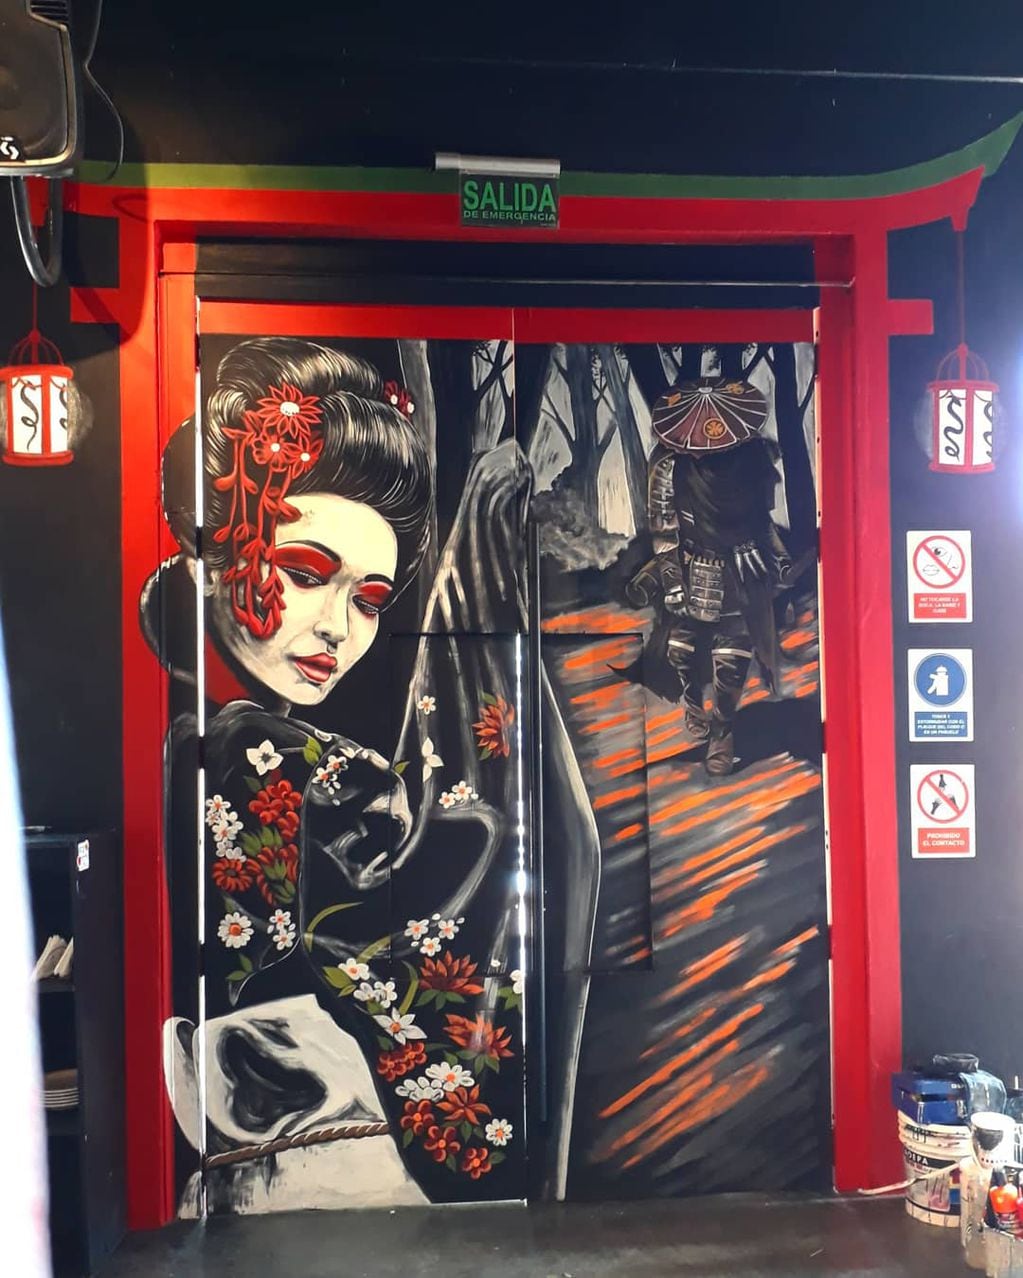 En África-Tokio Bar. La artista cordobesa radicada en Merlo agradece a los vecinos que siempre han valorado su arte desde su comienzo.